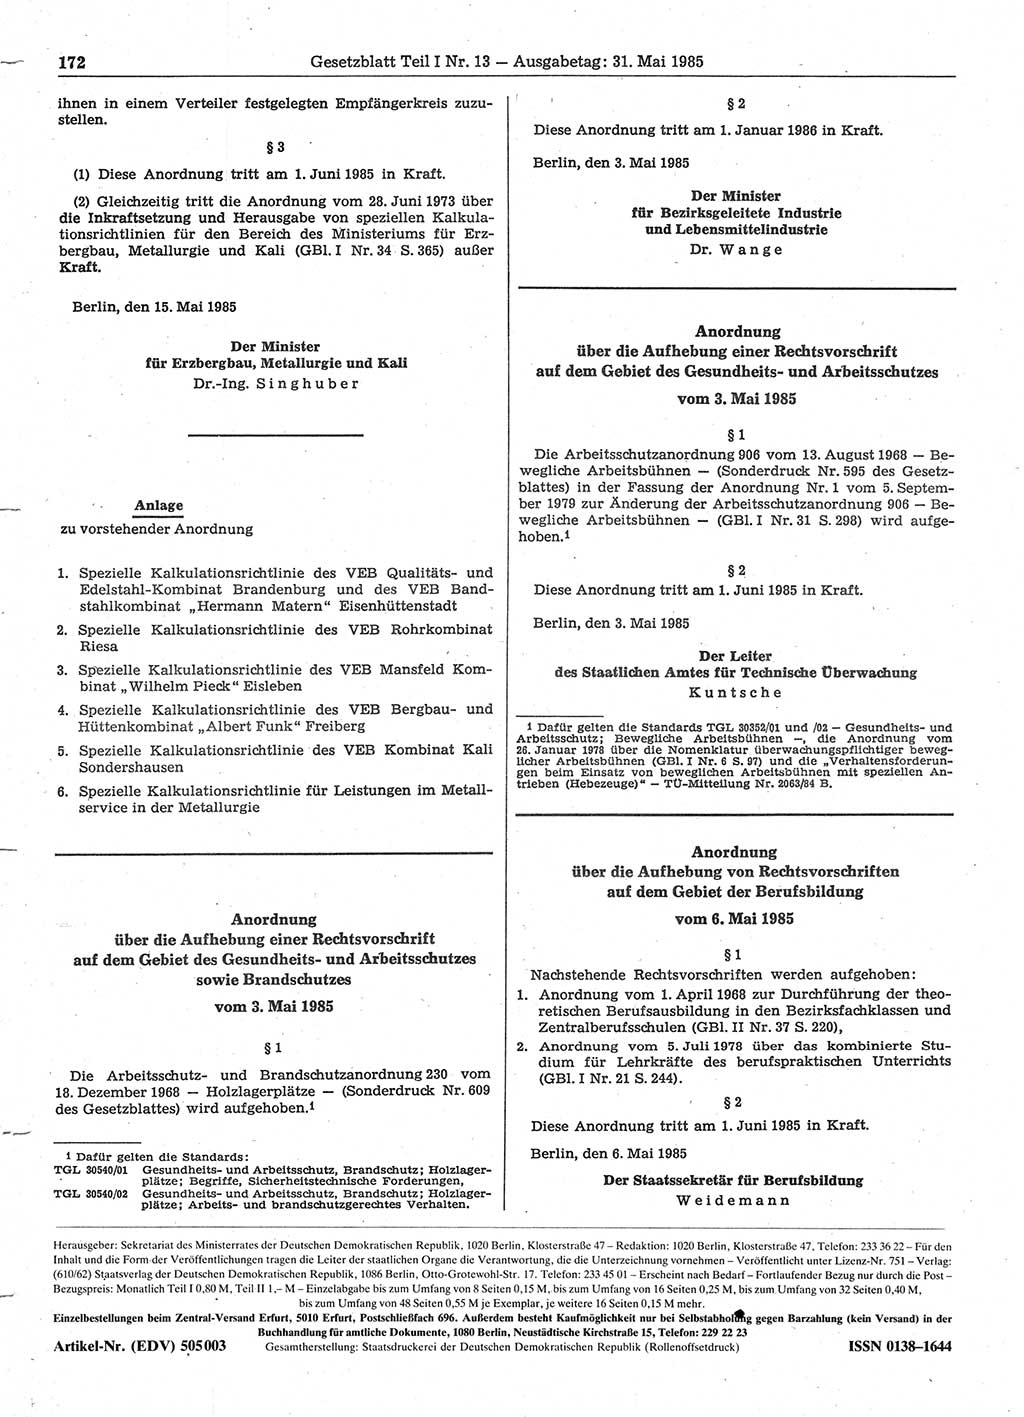 Gesetzblatt (GBl.) der Deutschen Demokratischen Republik (DDR) Teil Ⅰ 1985, Seite 172 (GBl. DDR Ⅰ 1985, S. 172)